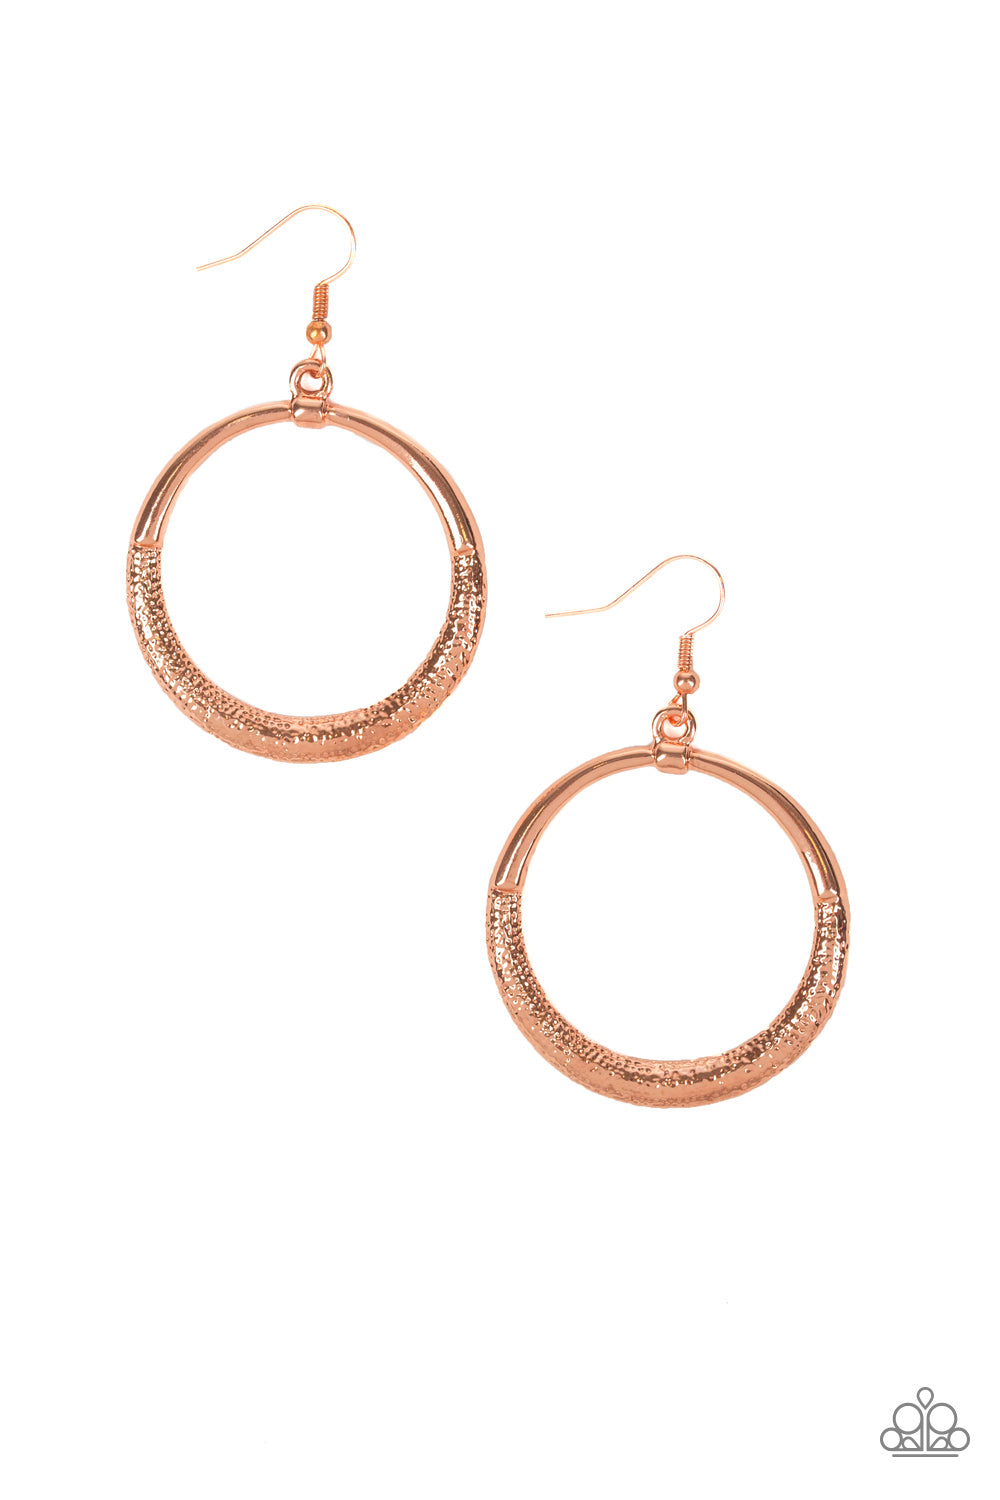 Modern Shimmer - Copper earrings